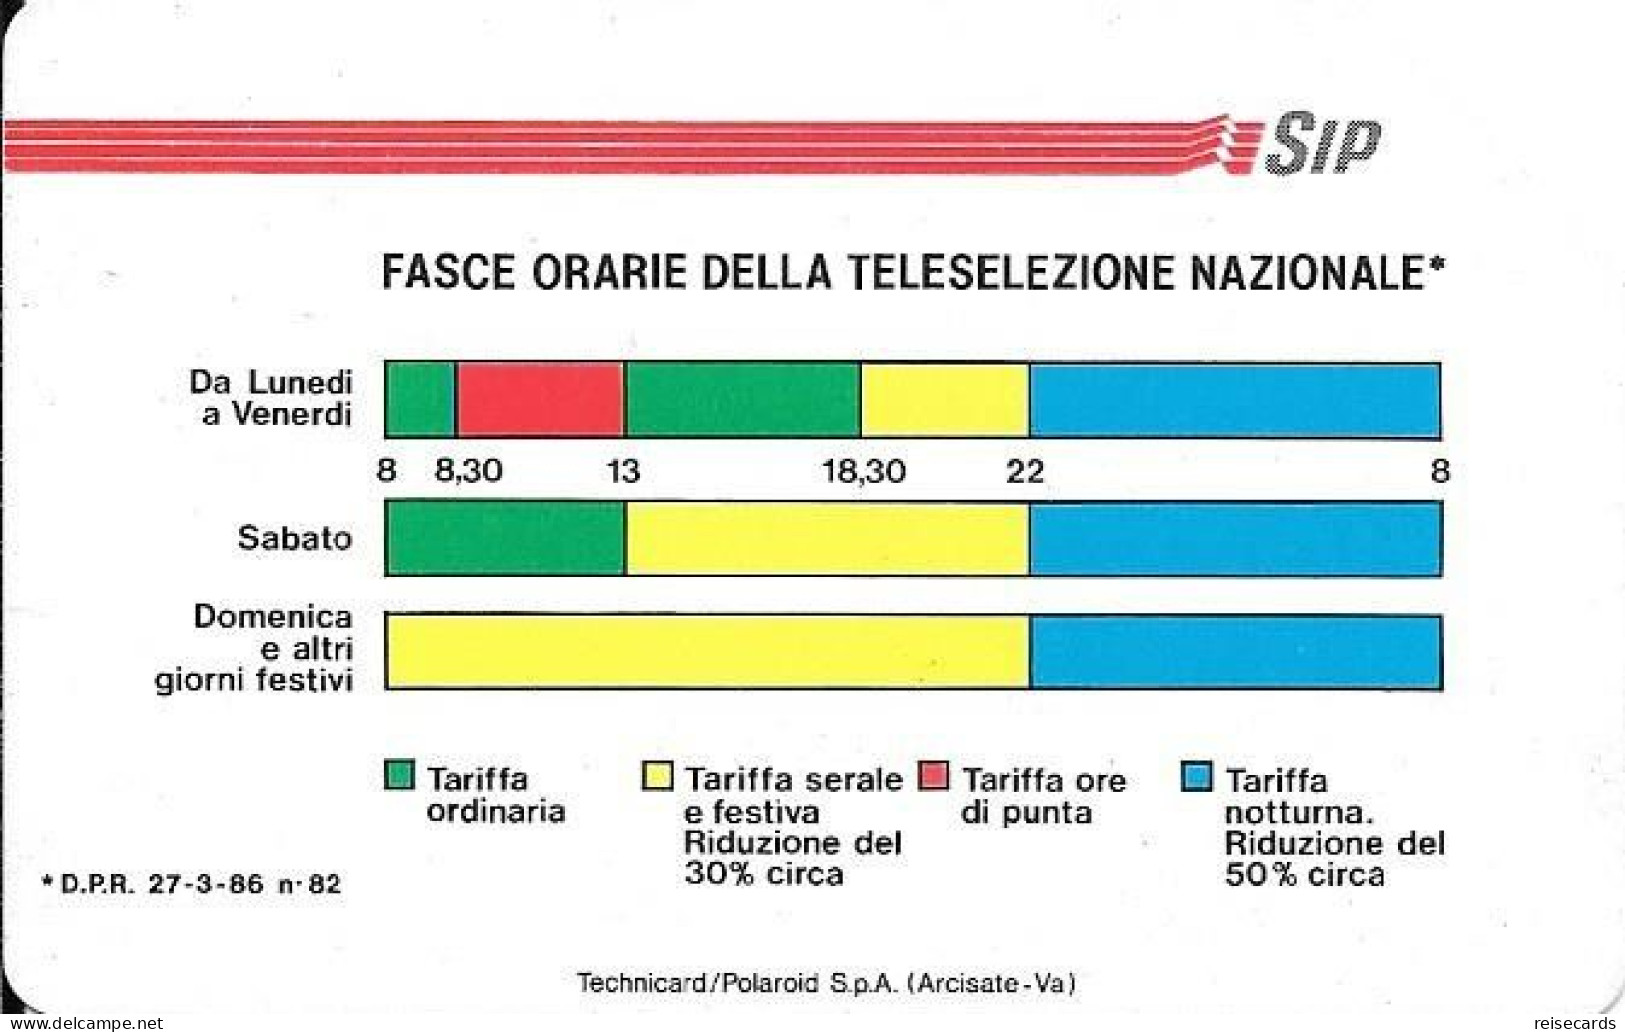 Italy: Telecom Italia SIP - Fasce Orarie Della Teleselezione Nazionale. Watermarks - Öff. Werbe-TK